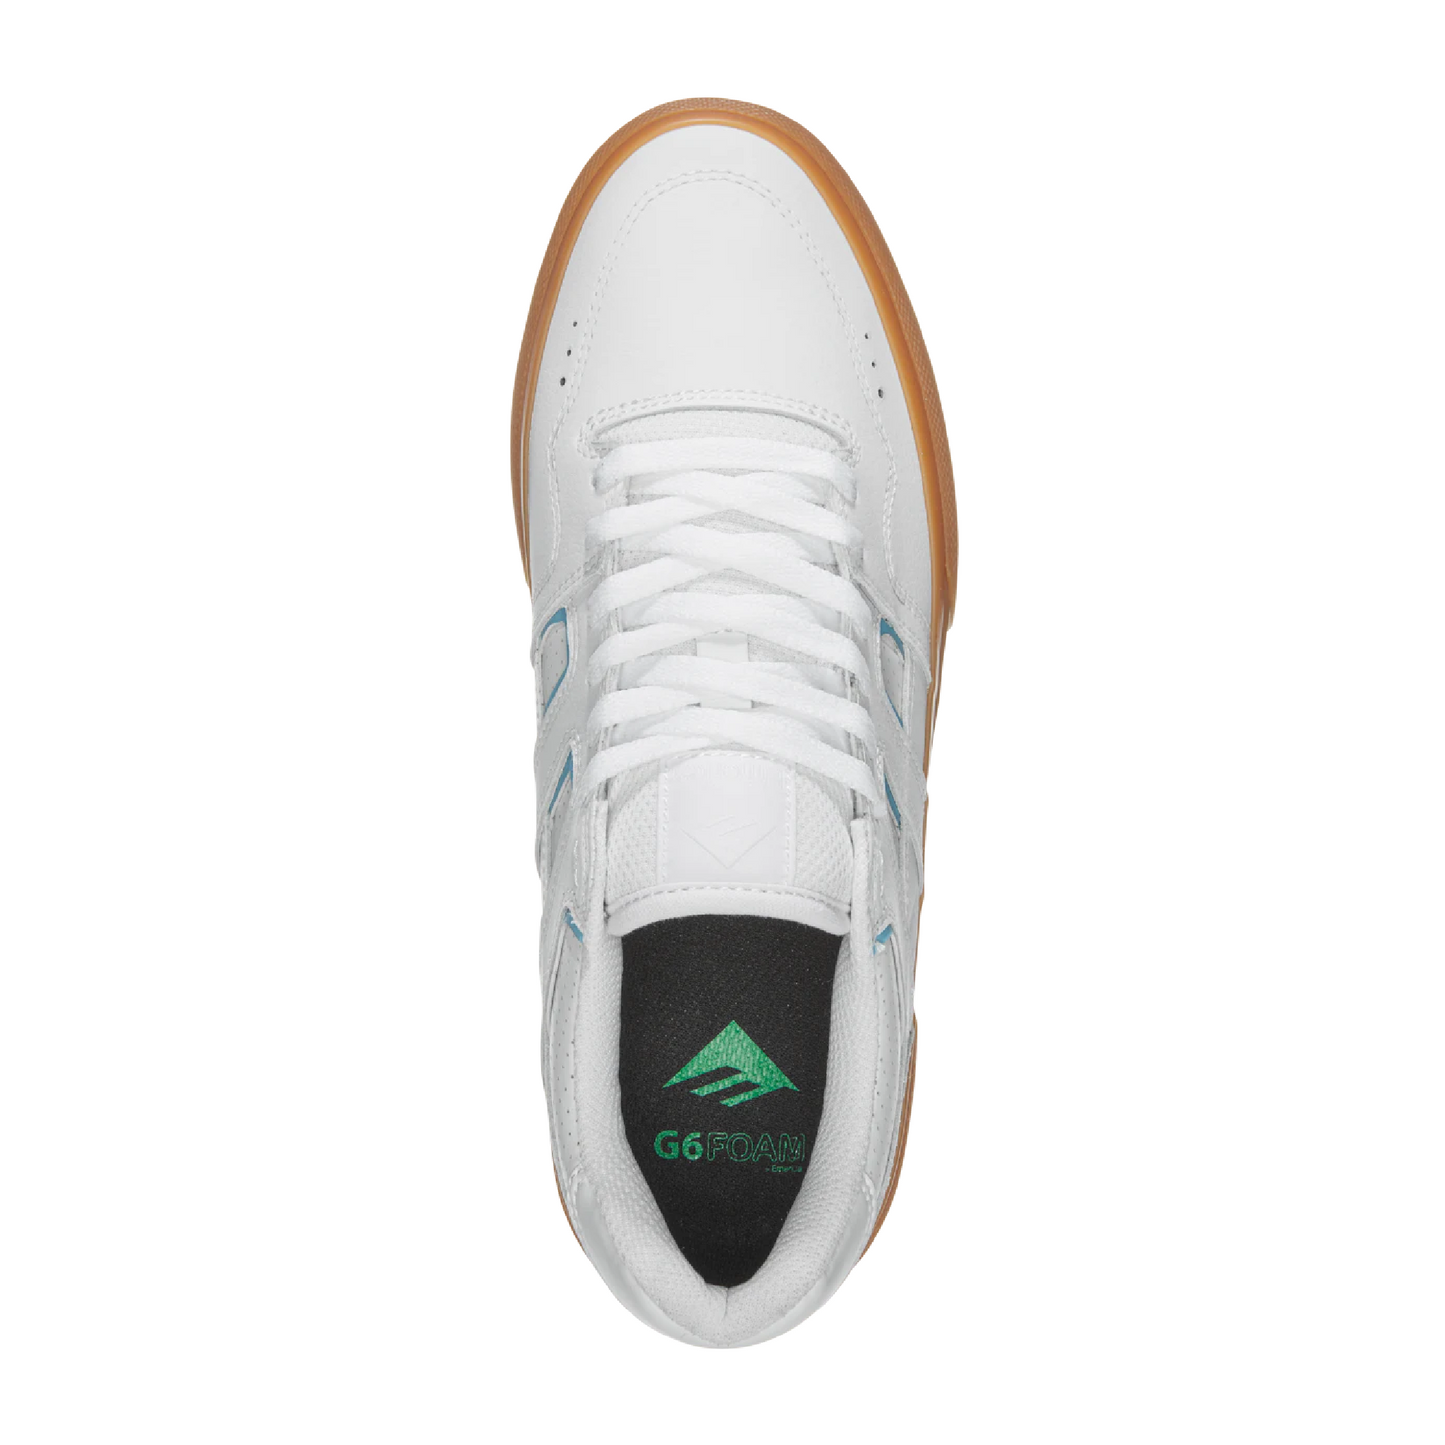 Emerica - Tilt G6 Vulc Skate Shoe (White/Blue/Gum)